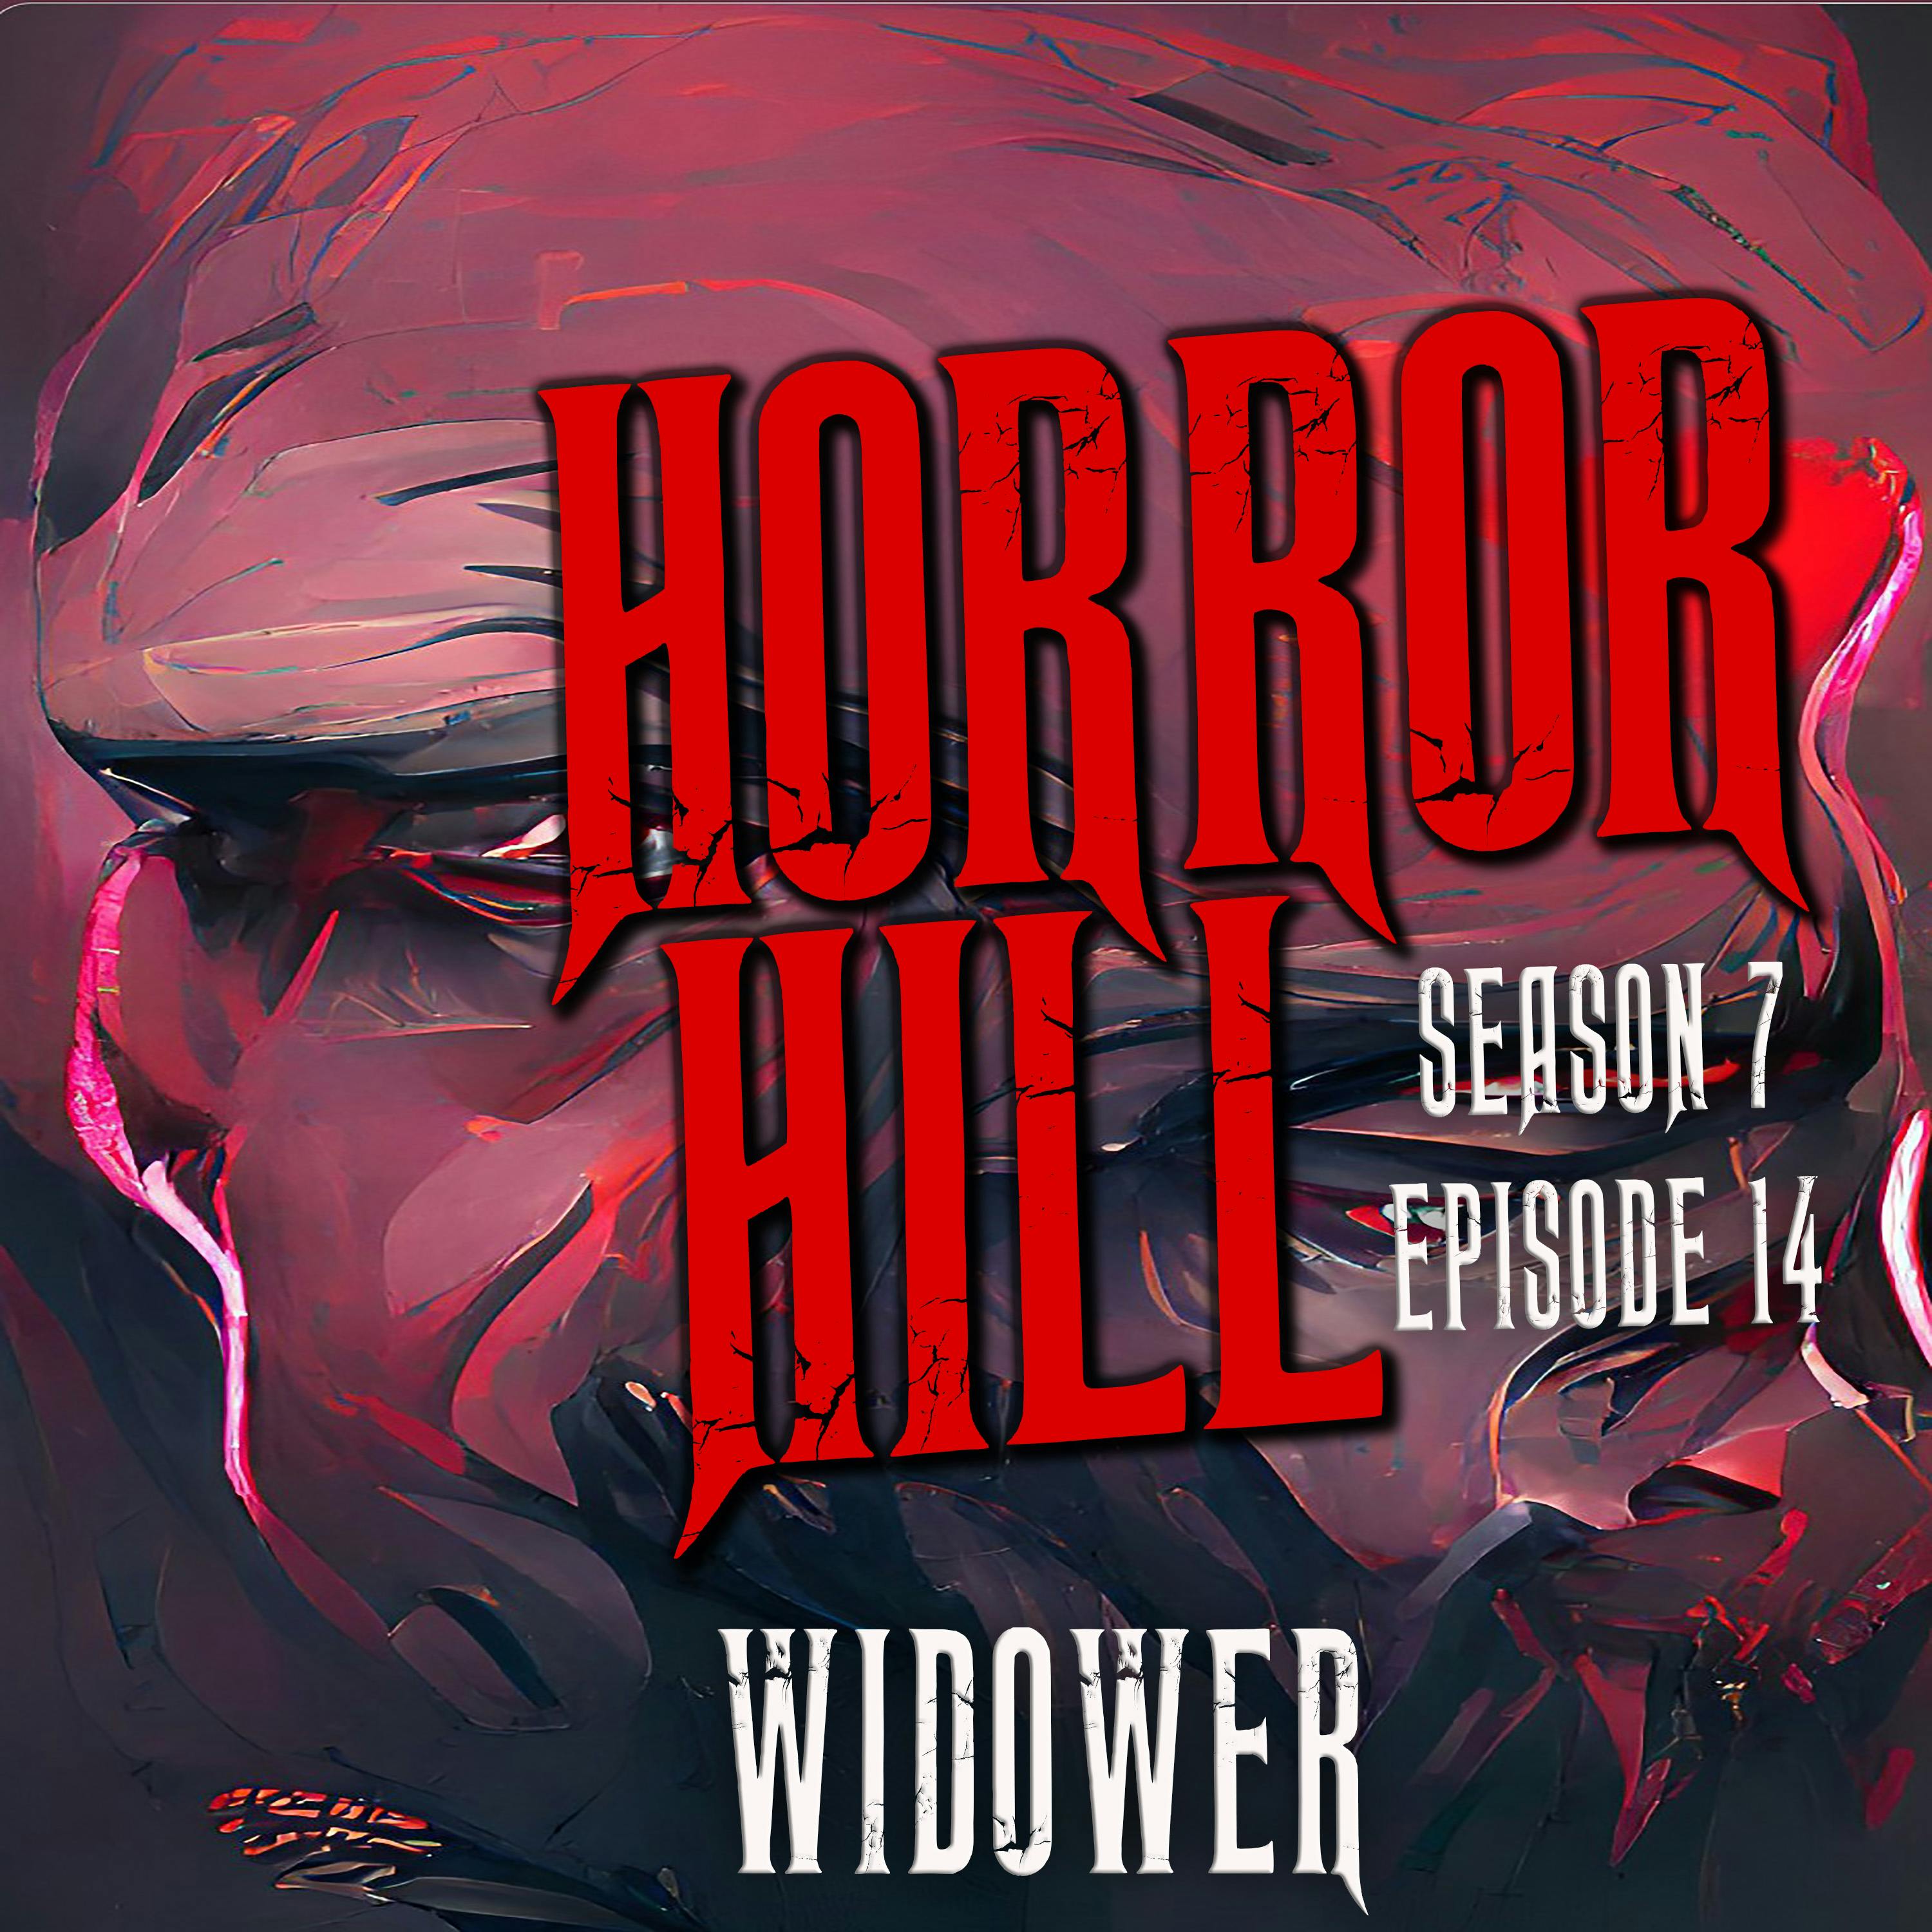 S7E14 - "The Widower" - Horror Hill